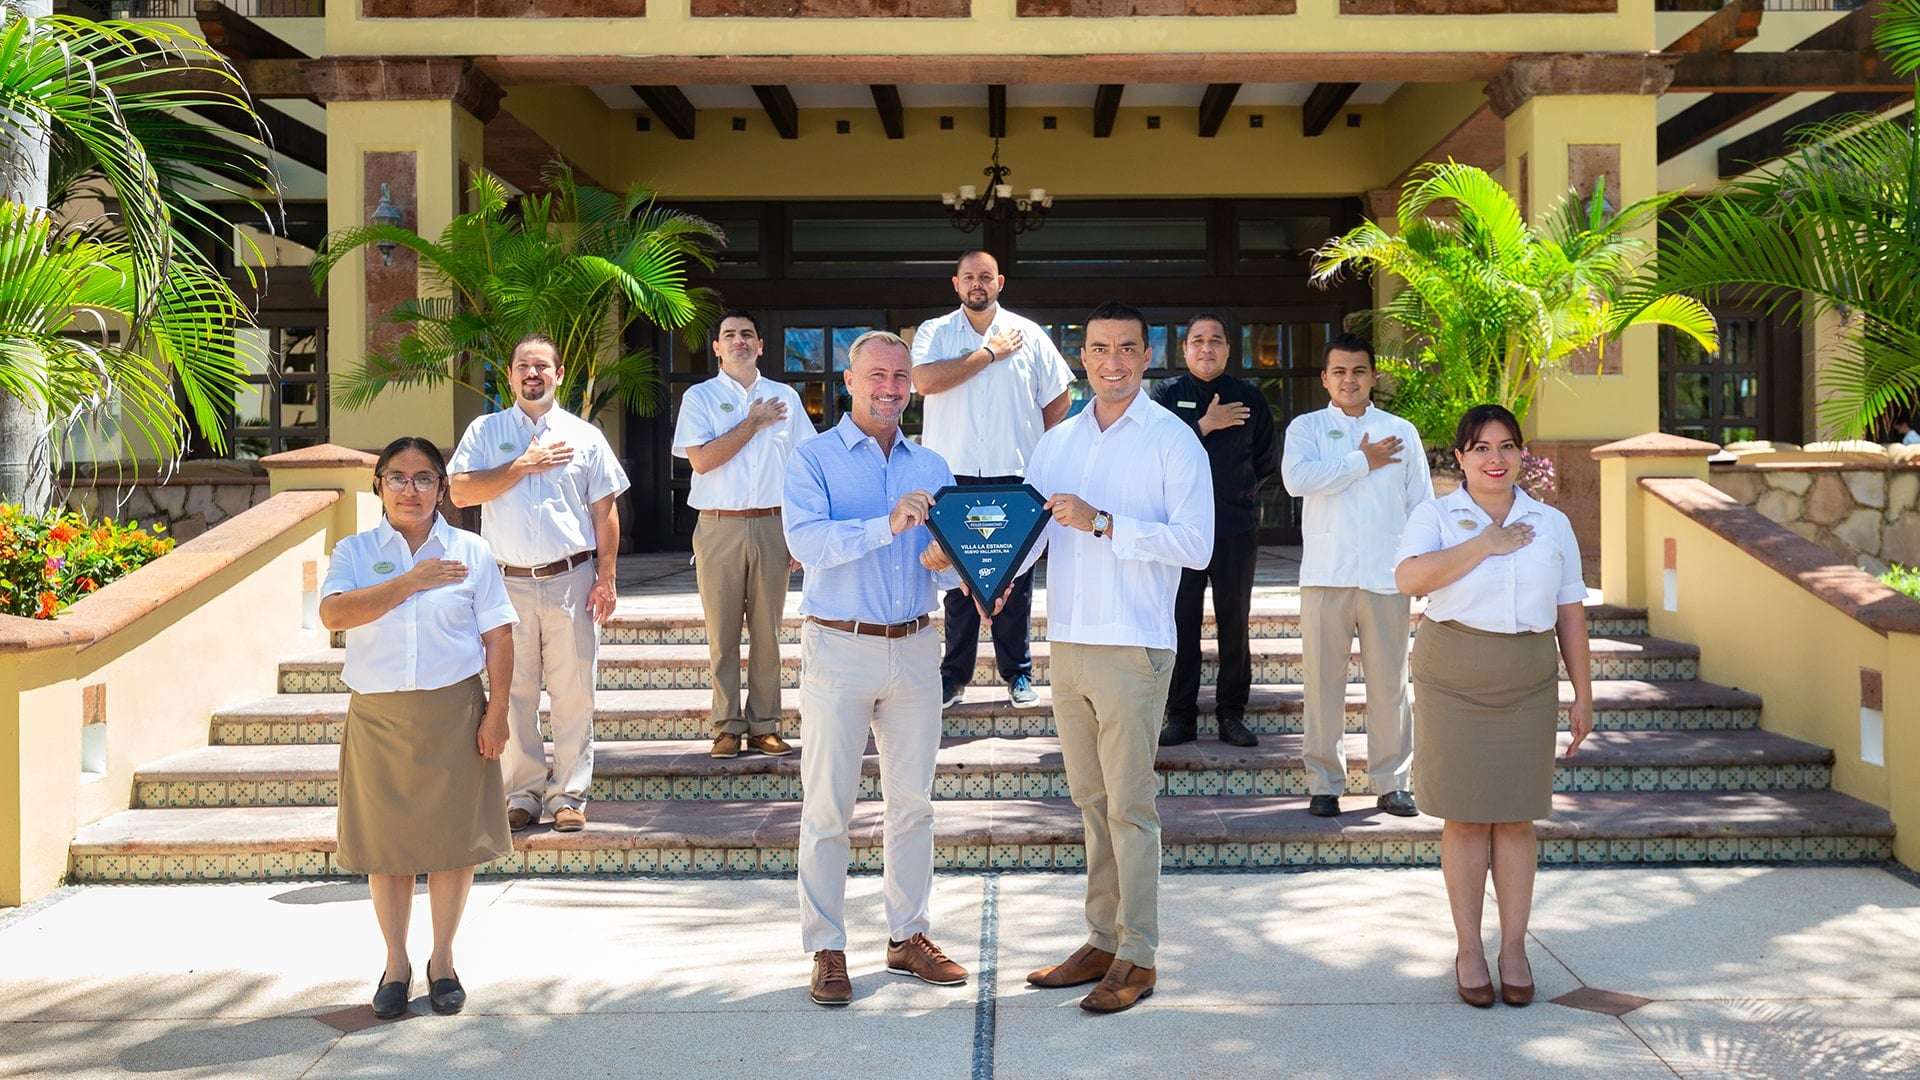 Villa la Estancia Employers, to celebration of four diamond award